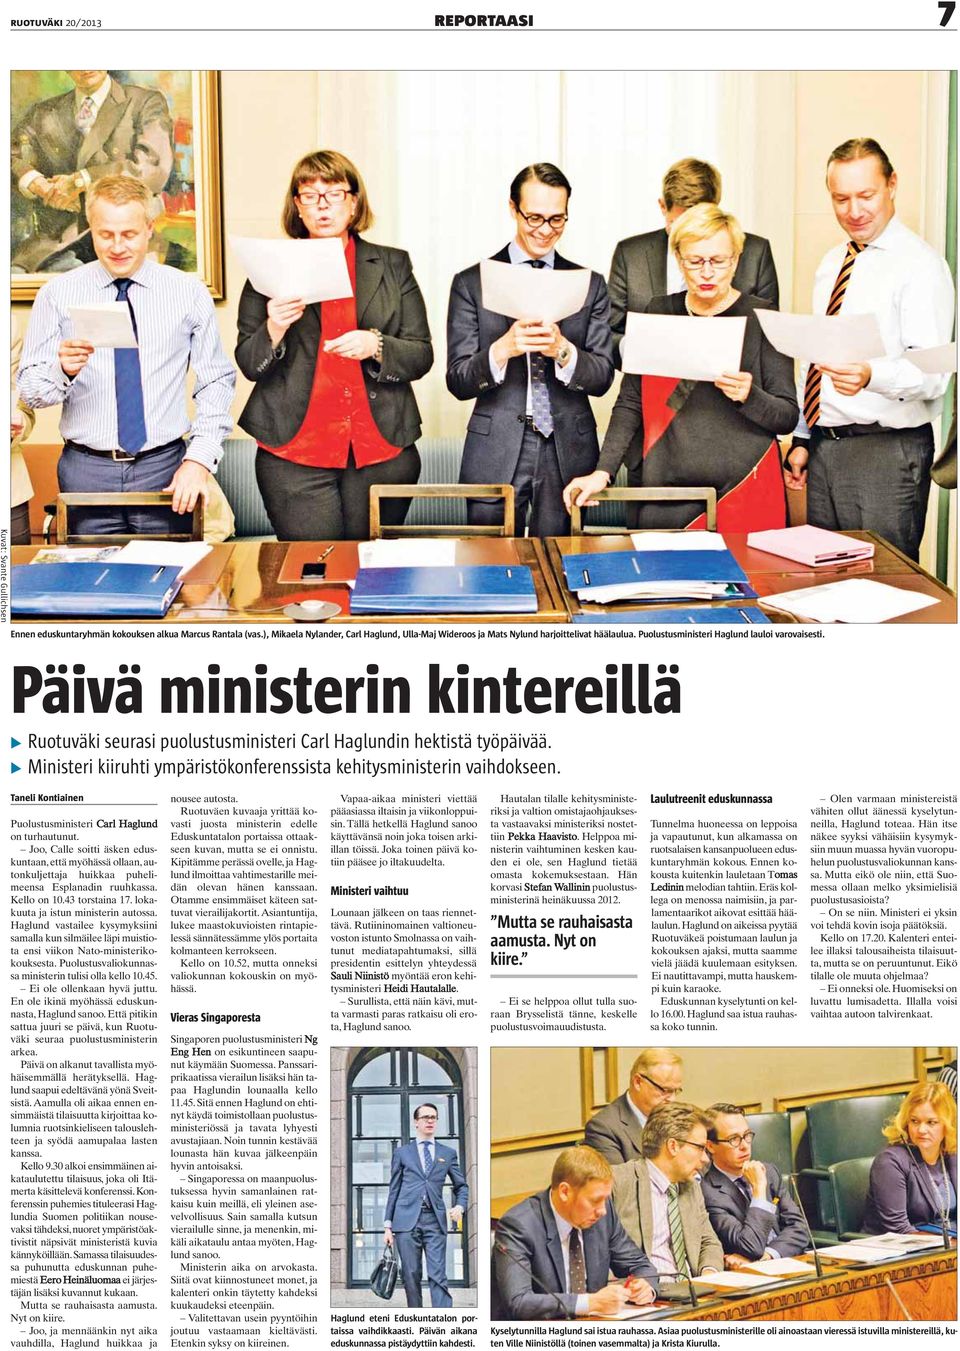 Päivä ministerin kintereillä Ruotuväki seurasi puolustusministeri Carl Haglundin hektistä työpäivää. Ministeri kiiruhti ympäristökonferenssista kehitysministerin vaihdokseen.